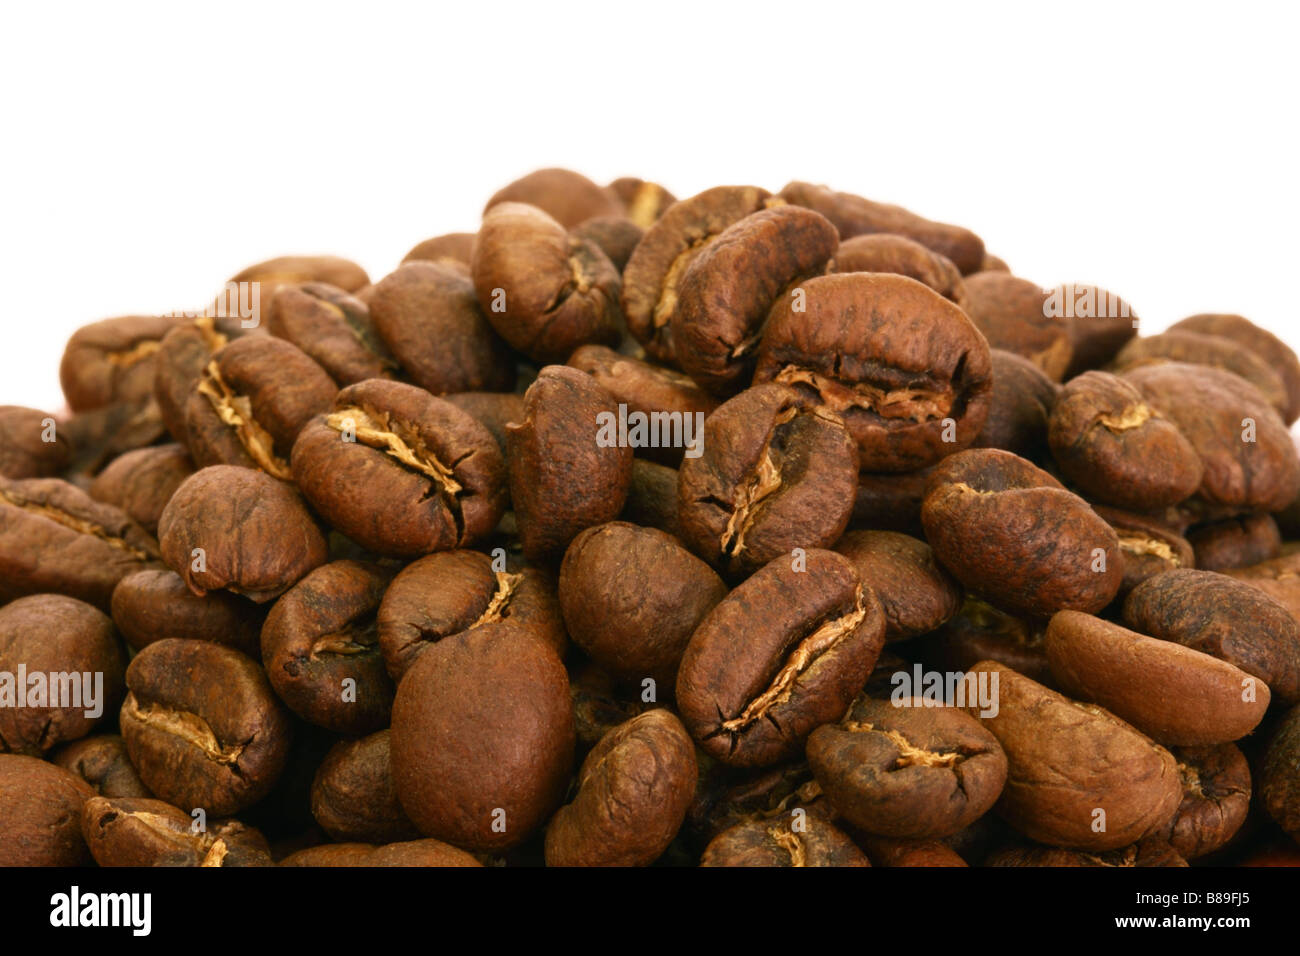 Les grains de café torréfié moyen à partir de la région de Nyeri, Kenya sur fond blanc Banque D'Images